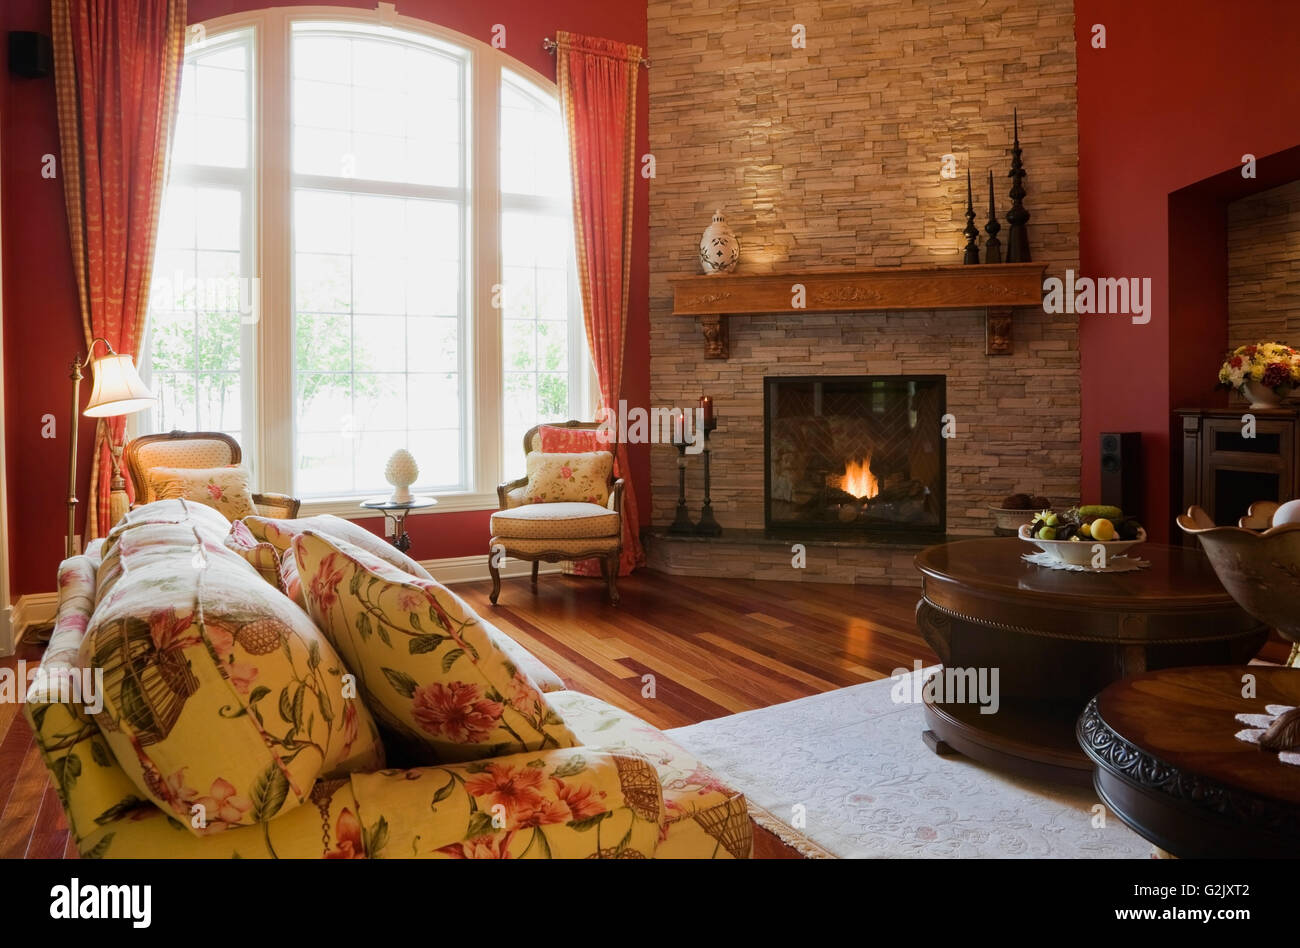 Blumige gepolstertes Sofa Wohnzimmerstühle beleuchtet Gas-Kamin im eleganten Landhaus Stil nach Hause Quebec Kanada dieses Bild Stockfoto